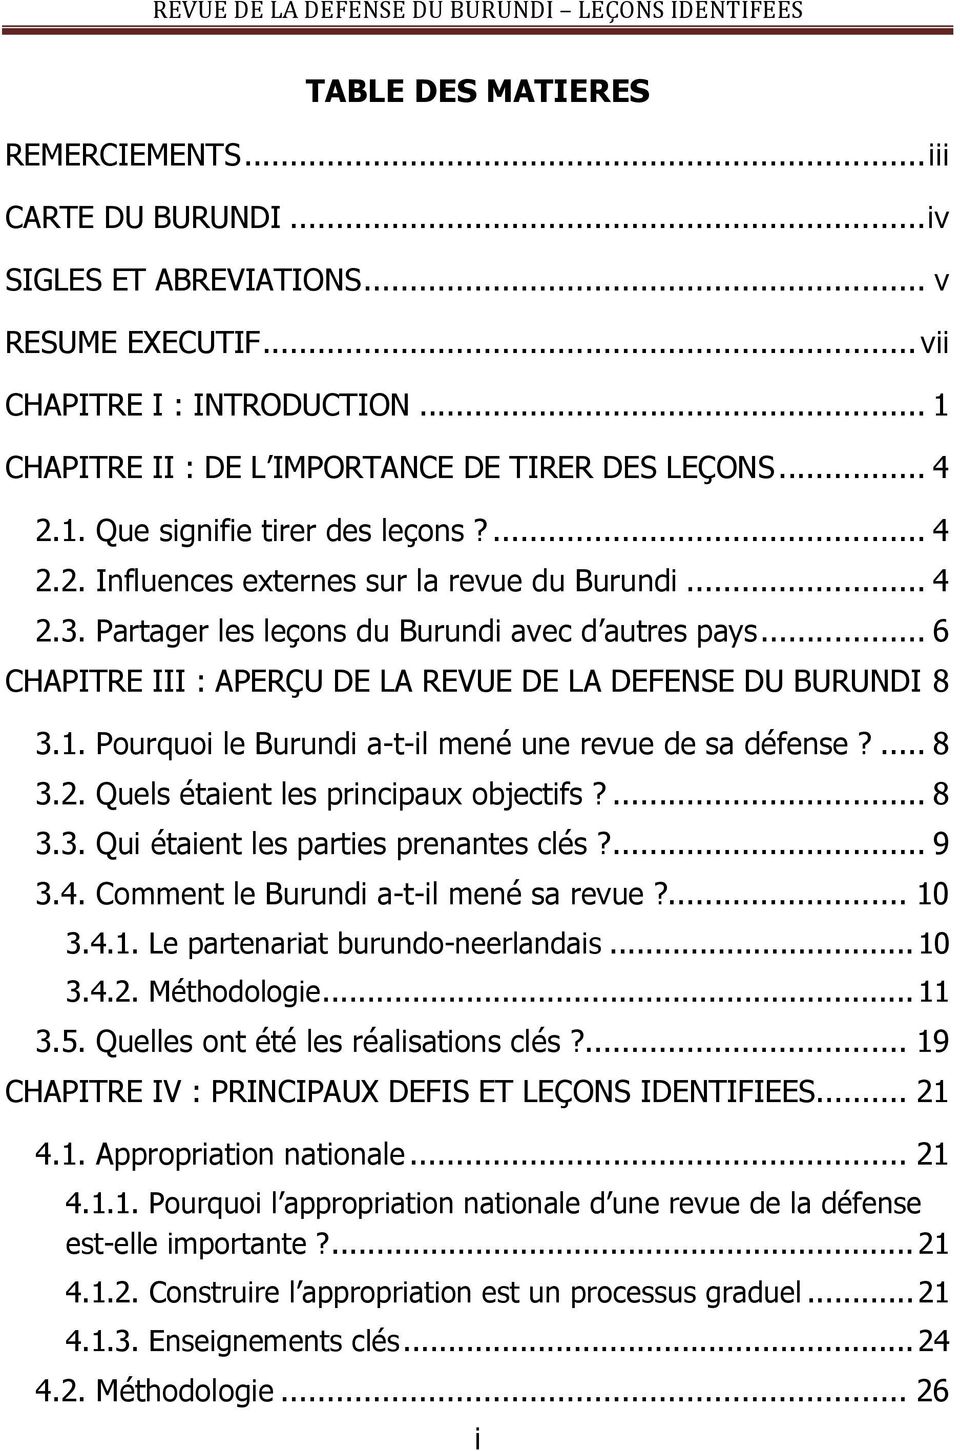 .. 6 CHAPITRE III : APERÇU DE LA REVUE DE LA DEFENSE DU BURUNDI 8 3.1. Pourquoi le Burundi a-t-il mené une revue de sa défense?... 8 3.2. Quels étaient les principaux objectifs?... 8 3.3. Qui étaient les parties prenantes clés?